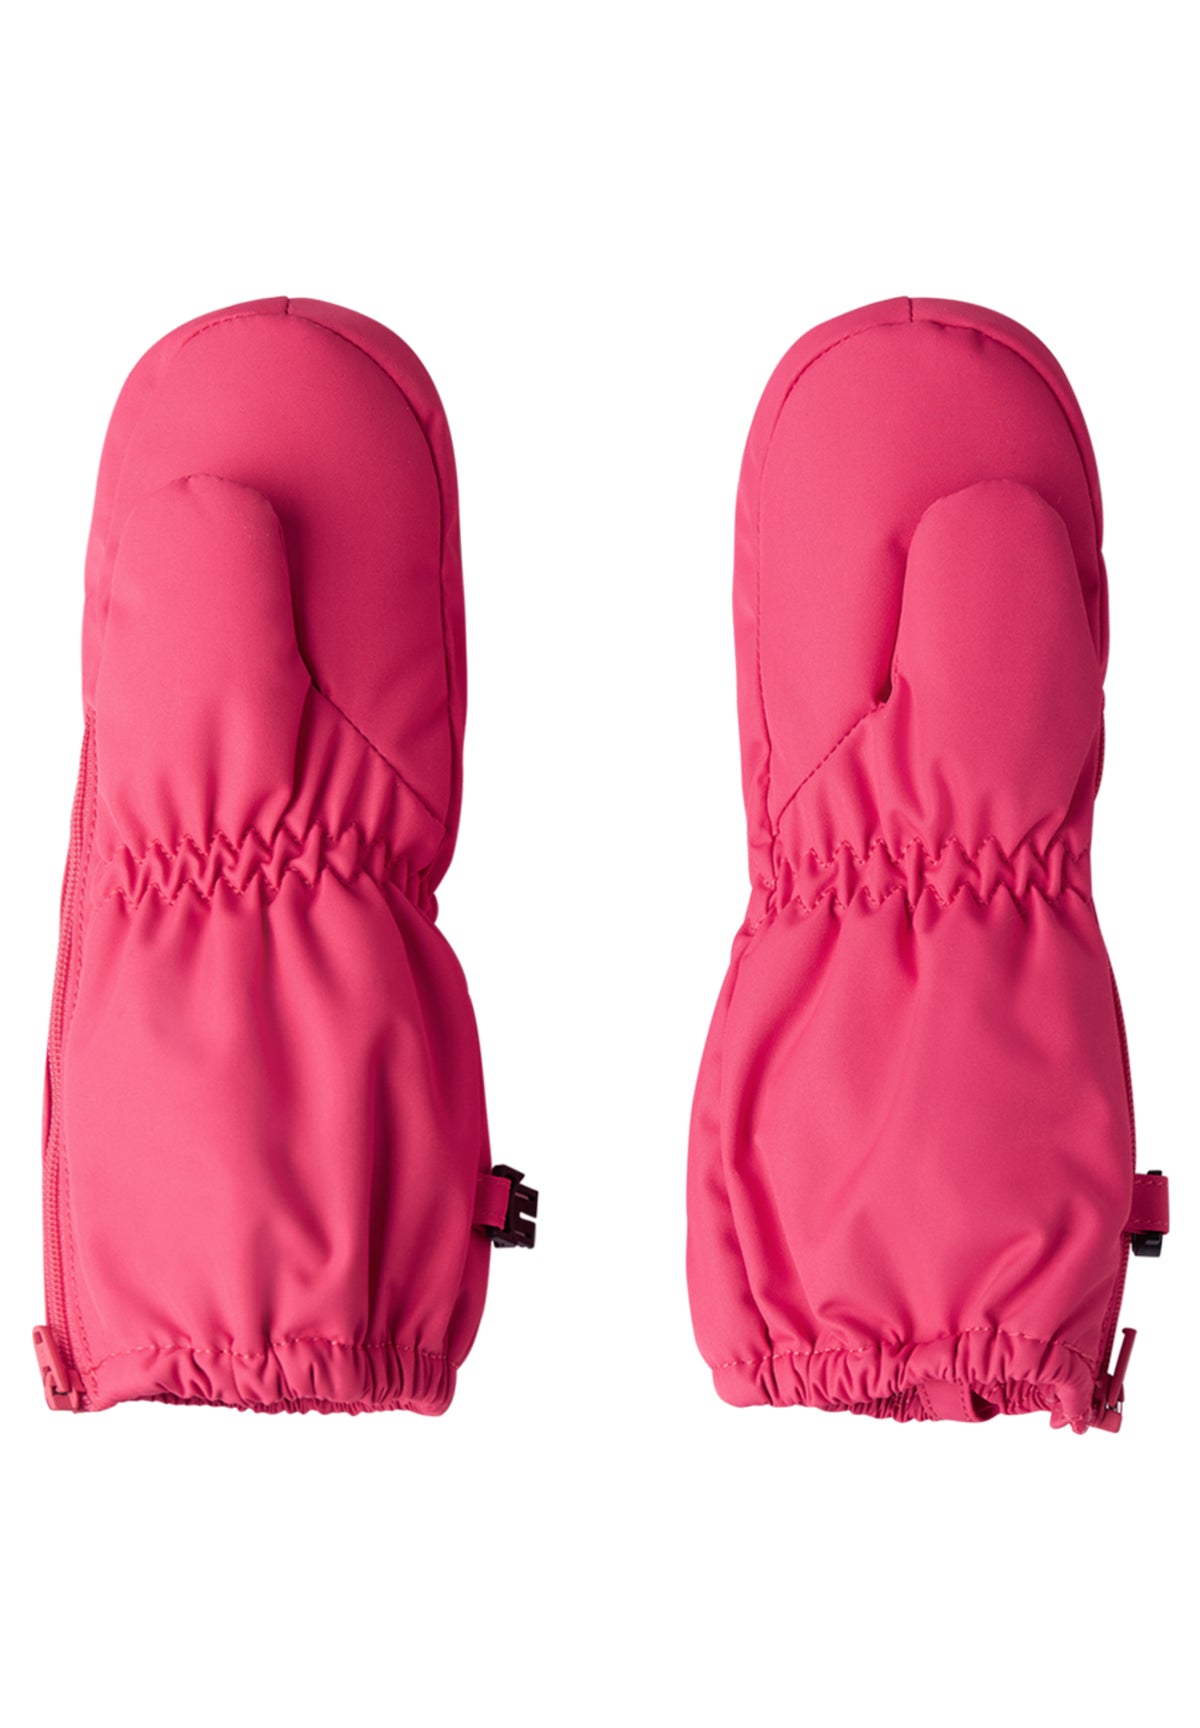 Reima Schnee-Handschuhe Tassu azalea pink